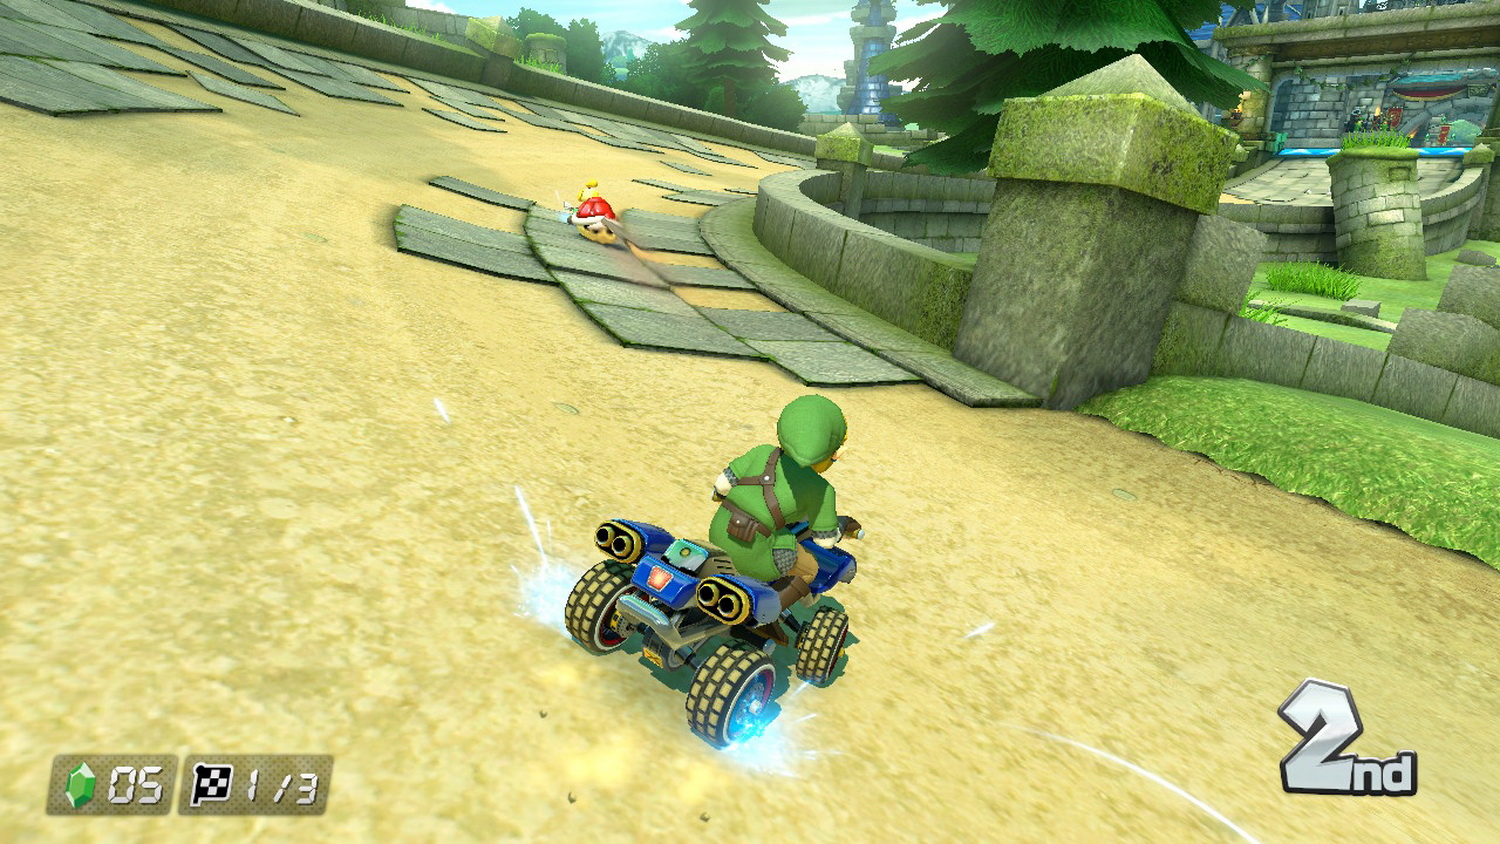 Mario Kart 8 Deluxe review